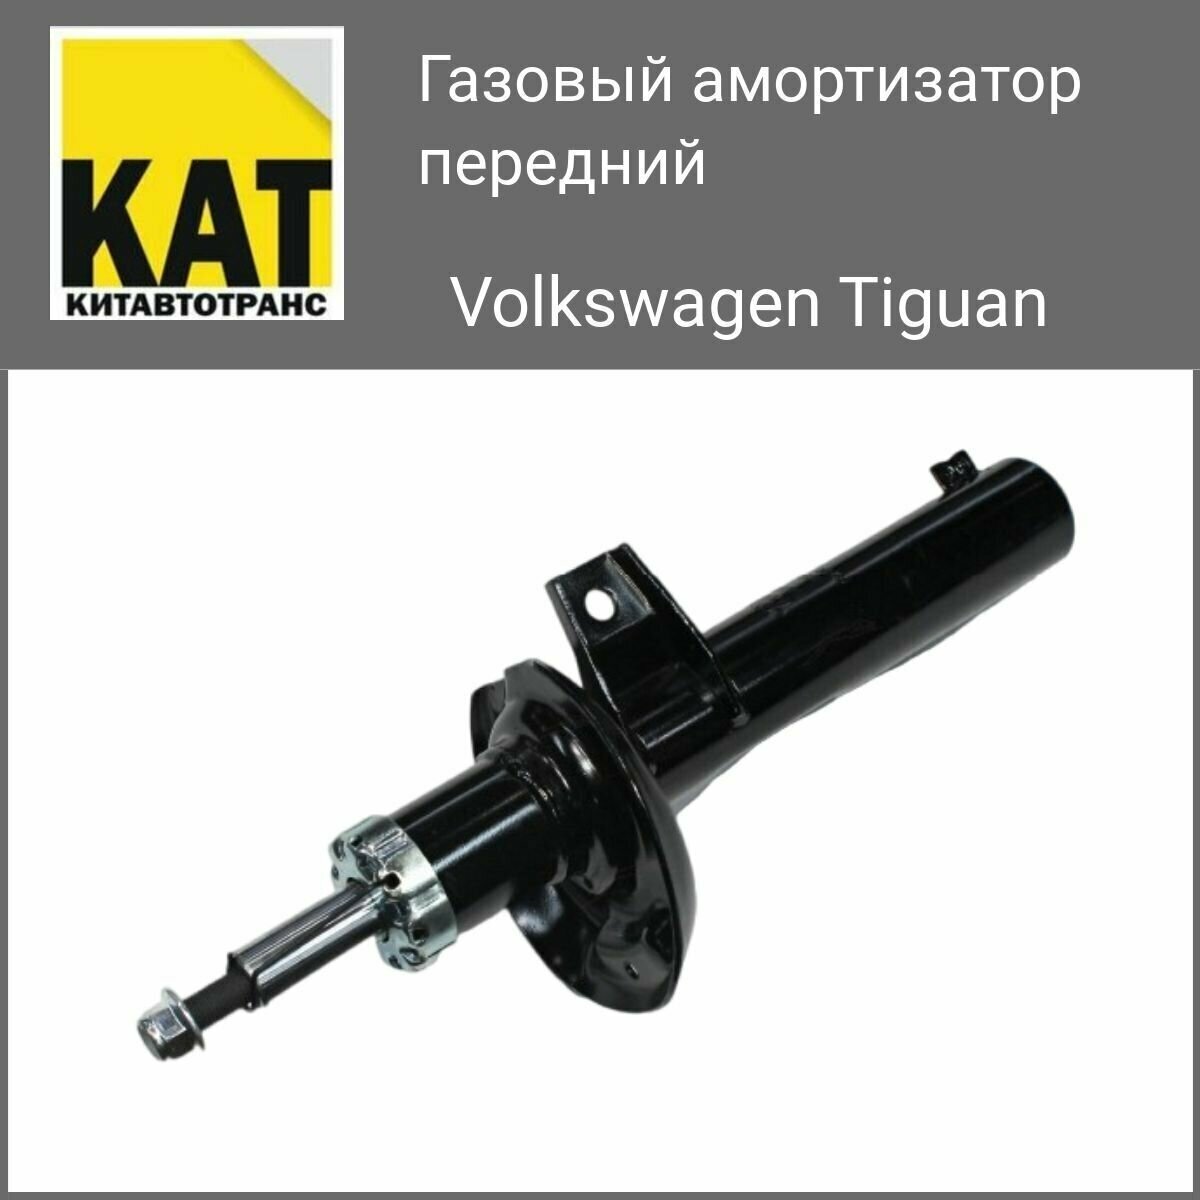 Газовый Амортизатор передний Фольксваген Тигуан (Volkswagen Tiguan 5N) Комплект 2 штуки